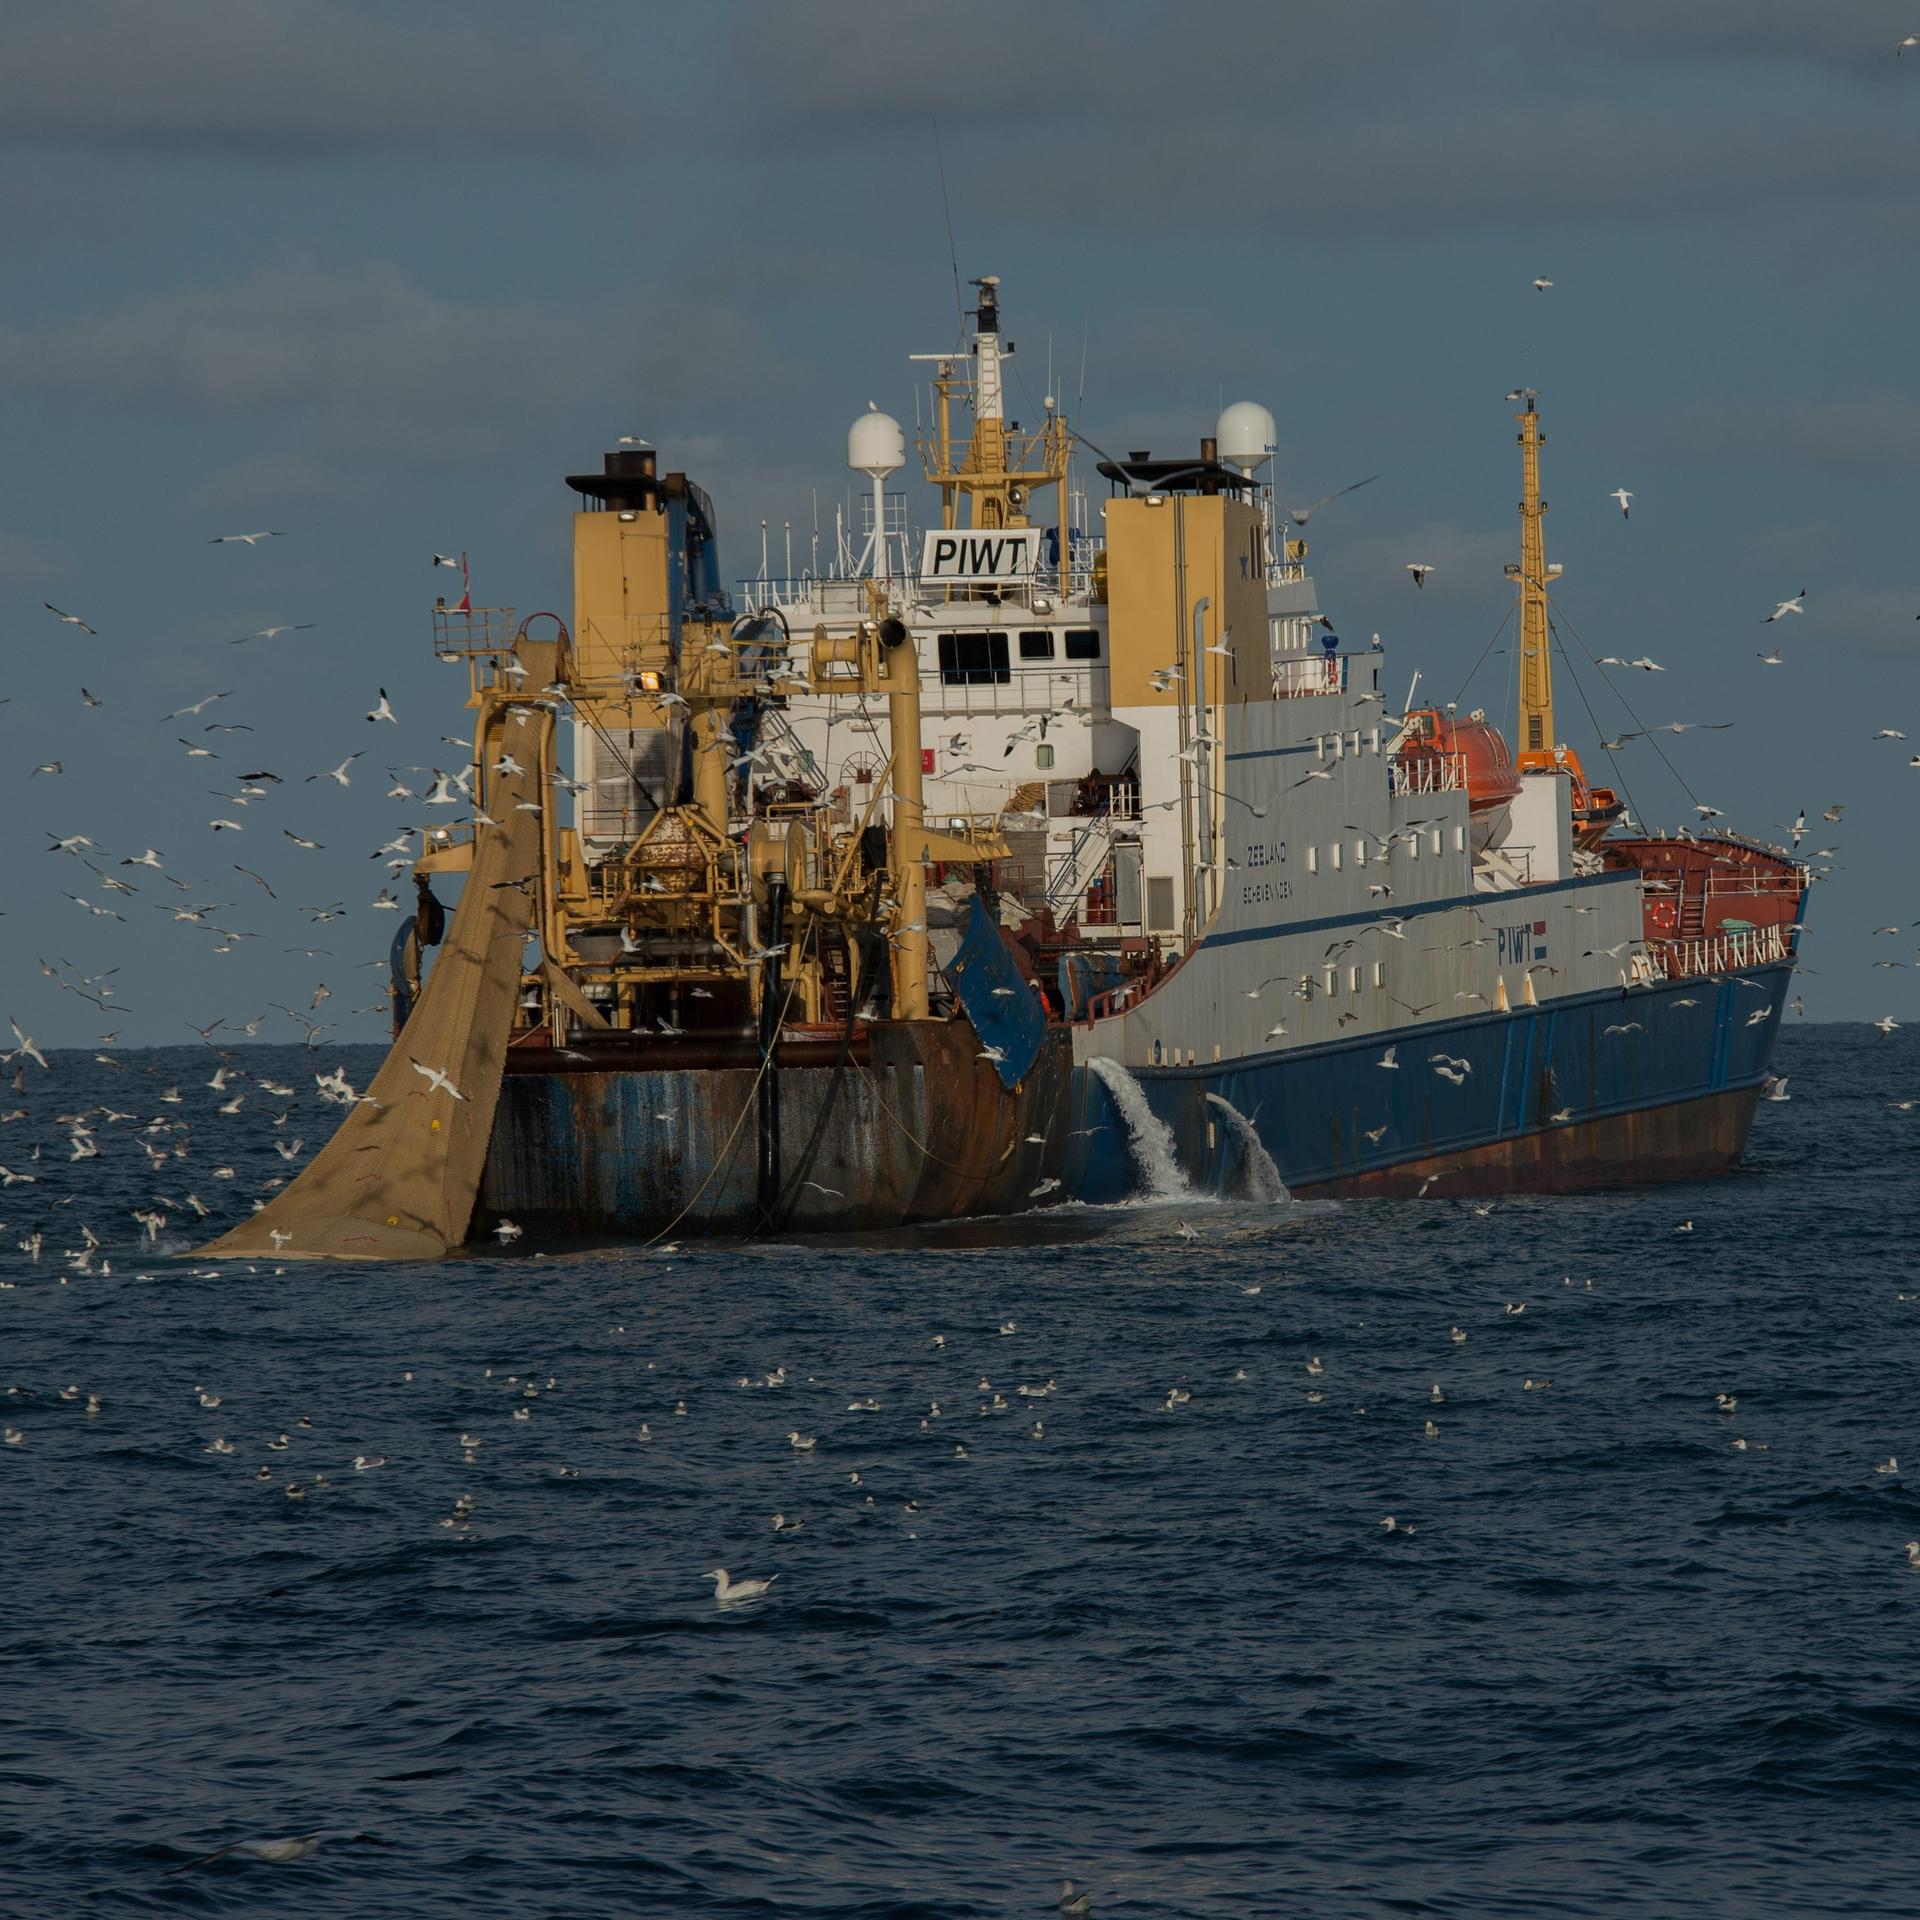 Klimawandel - Fischerei mit Grundschleppnetzen verursacht hohe Emissionen